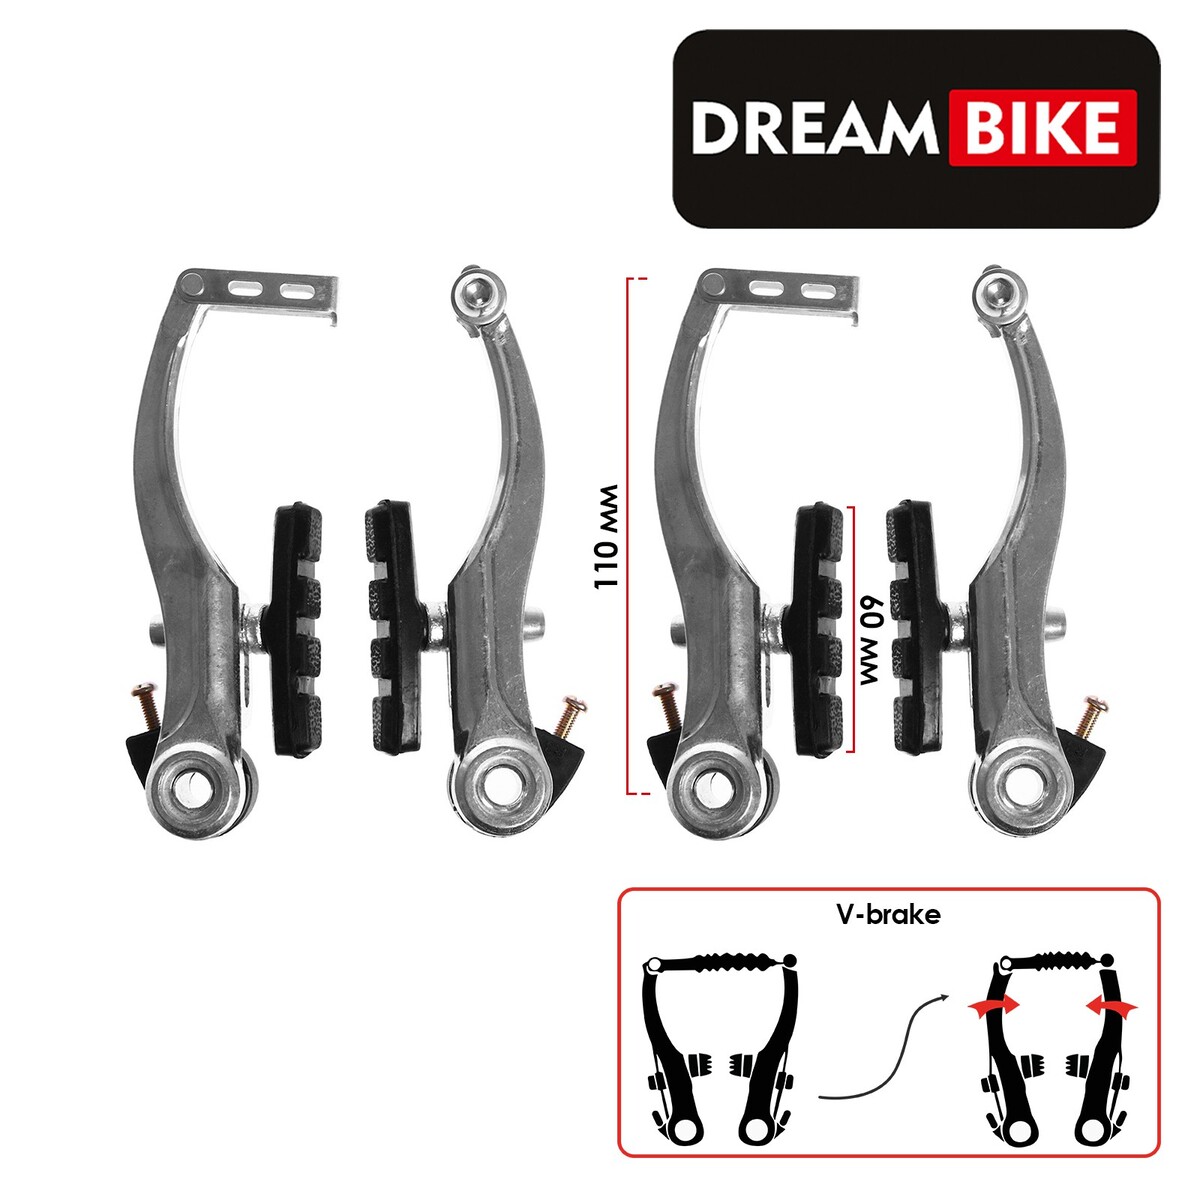   dream bike, v-brake, ,  110 ,  60 ,  